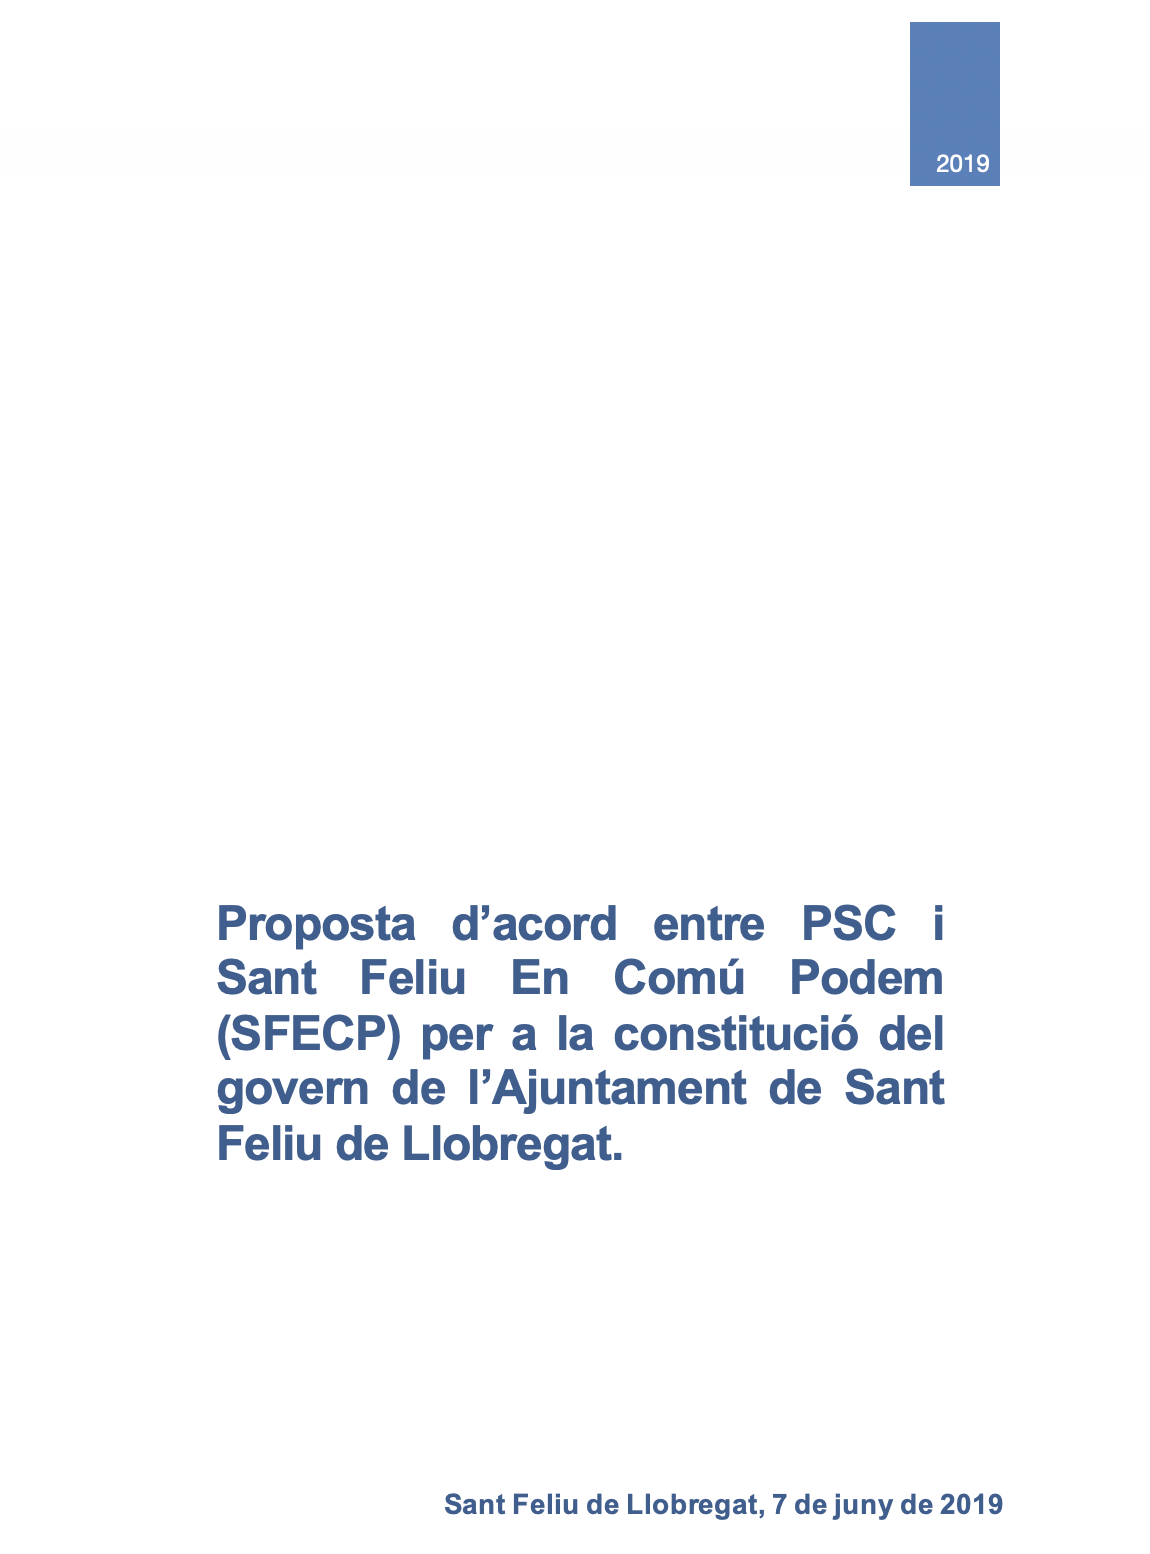 Proposta de pacte del PSC a SFECP per governar Sant Feliu els propers 4 anys